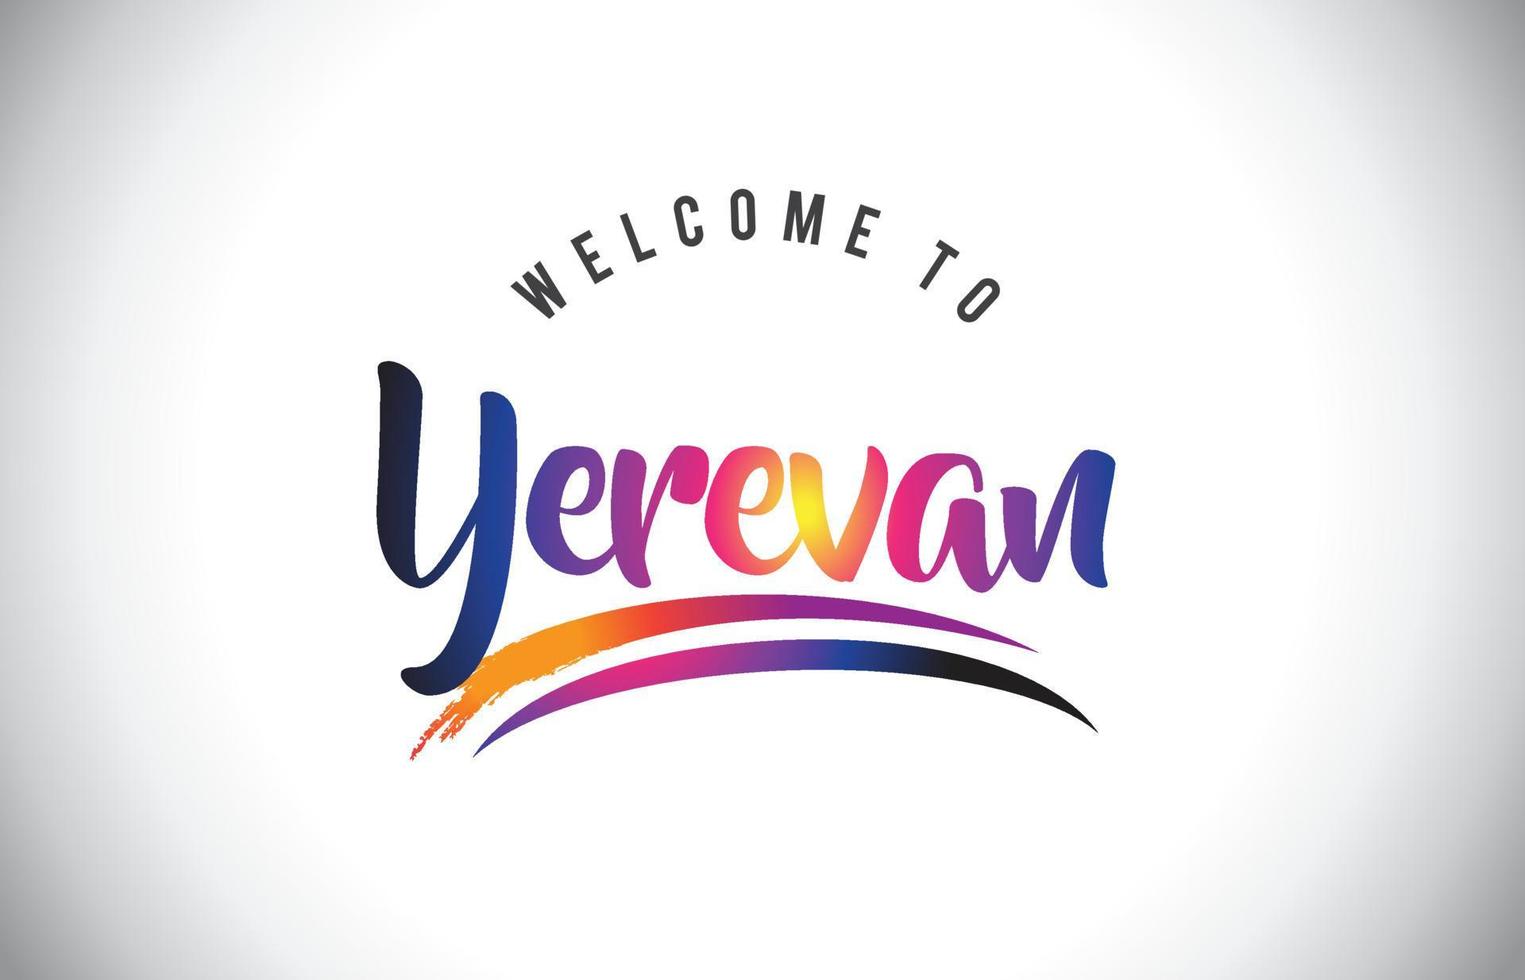 Yerevan bem-vindo à mensagem em vibrantes cores roxas modernas. vetor